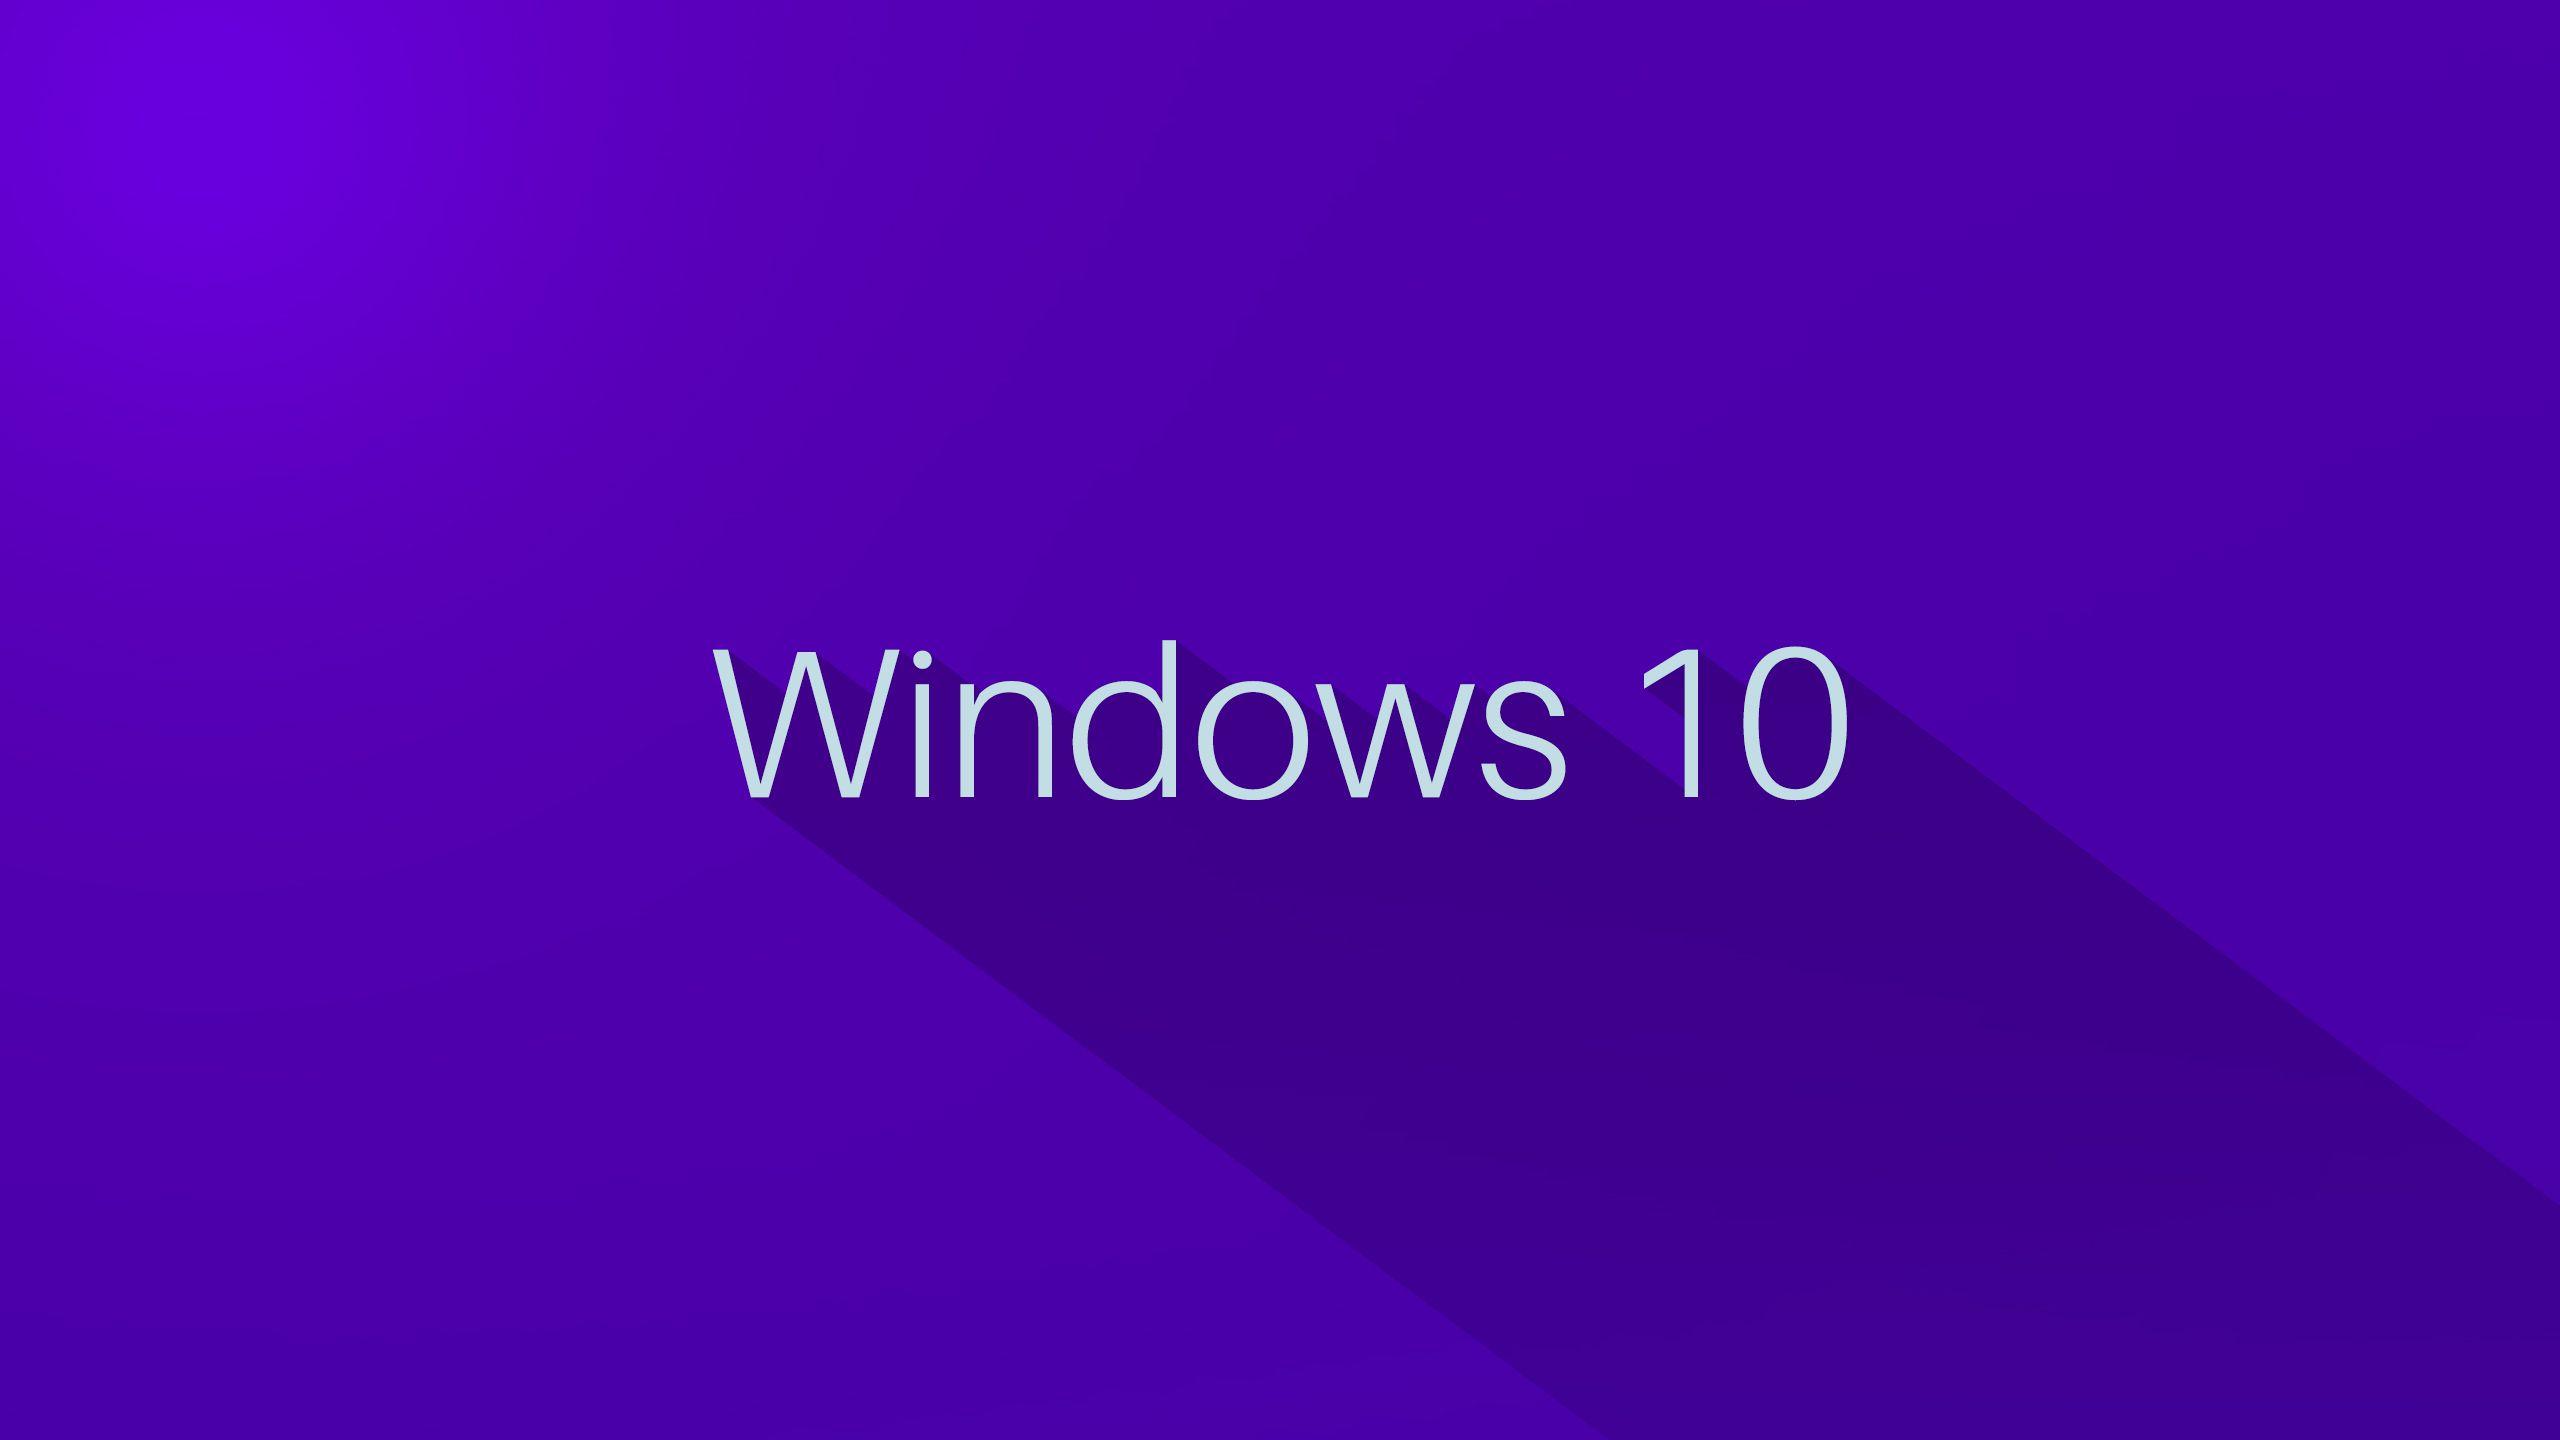 Purple Windows Logo - Laptop HD Wallpapers For Windows 10 | PixelsTalk.Net